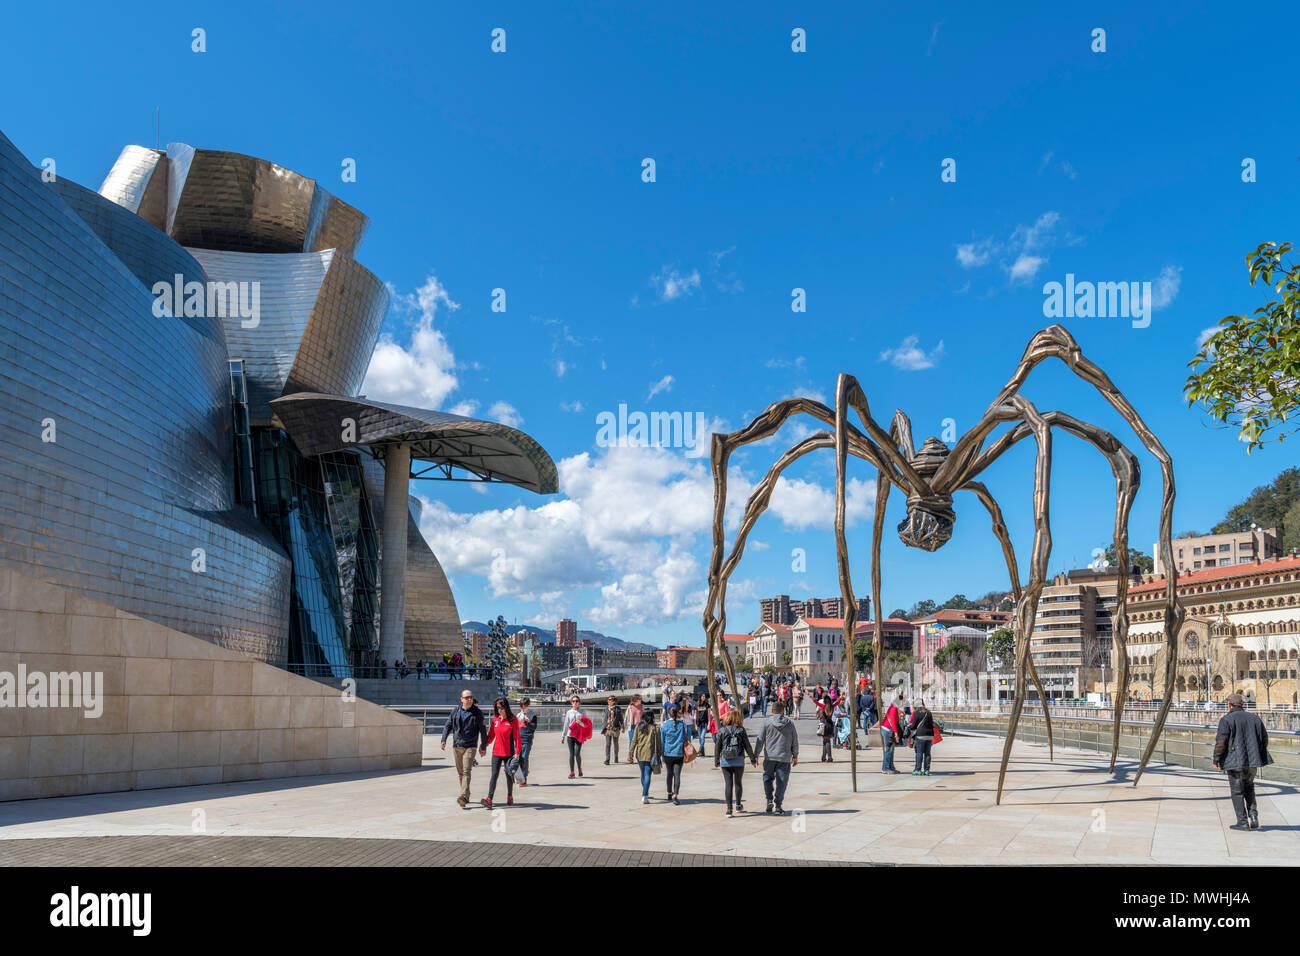 Musée Guggenheim de Bilbao. L'Araignée géante sculpture maman, de Louise Bourgeois, à l'extérieur du musée Guggenheim de Bilbao, Pays Basque, Espagne Banque D'Images